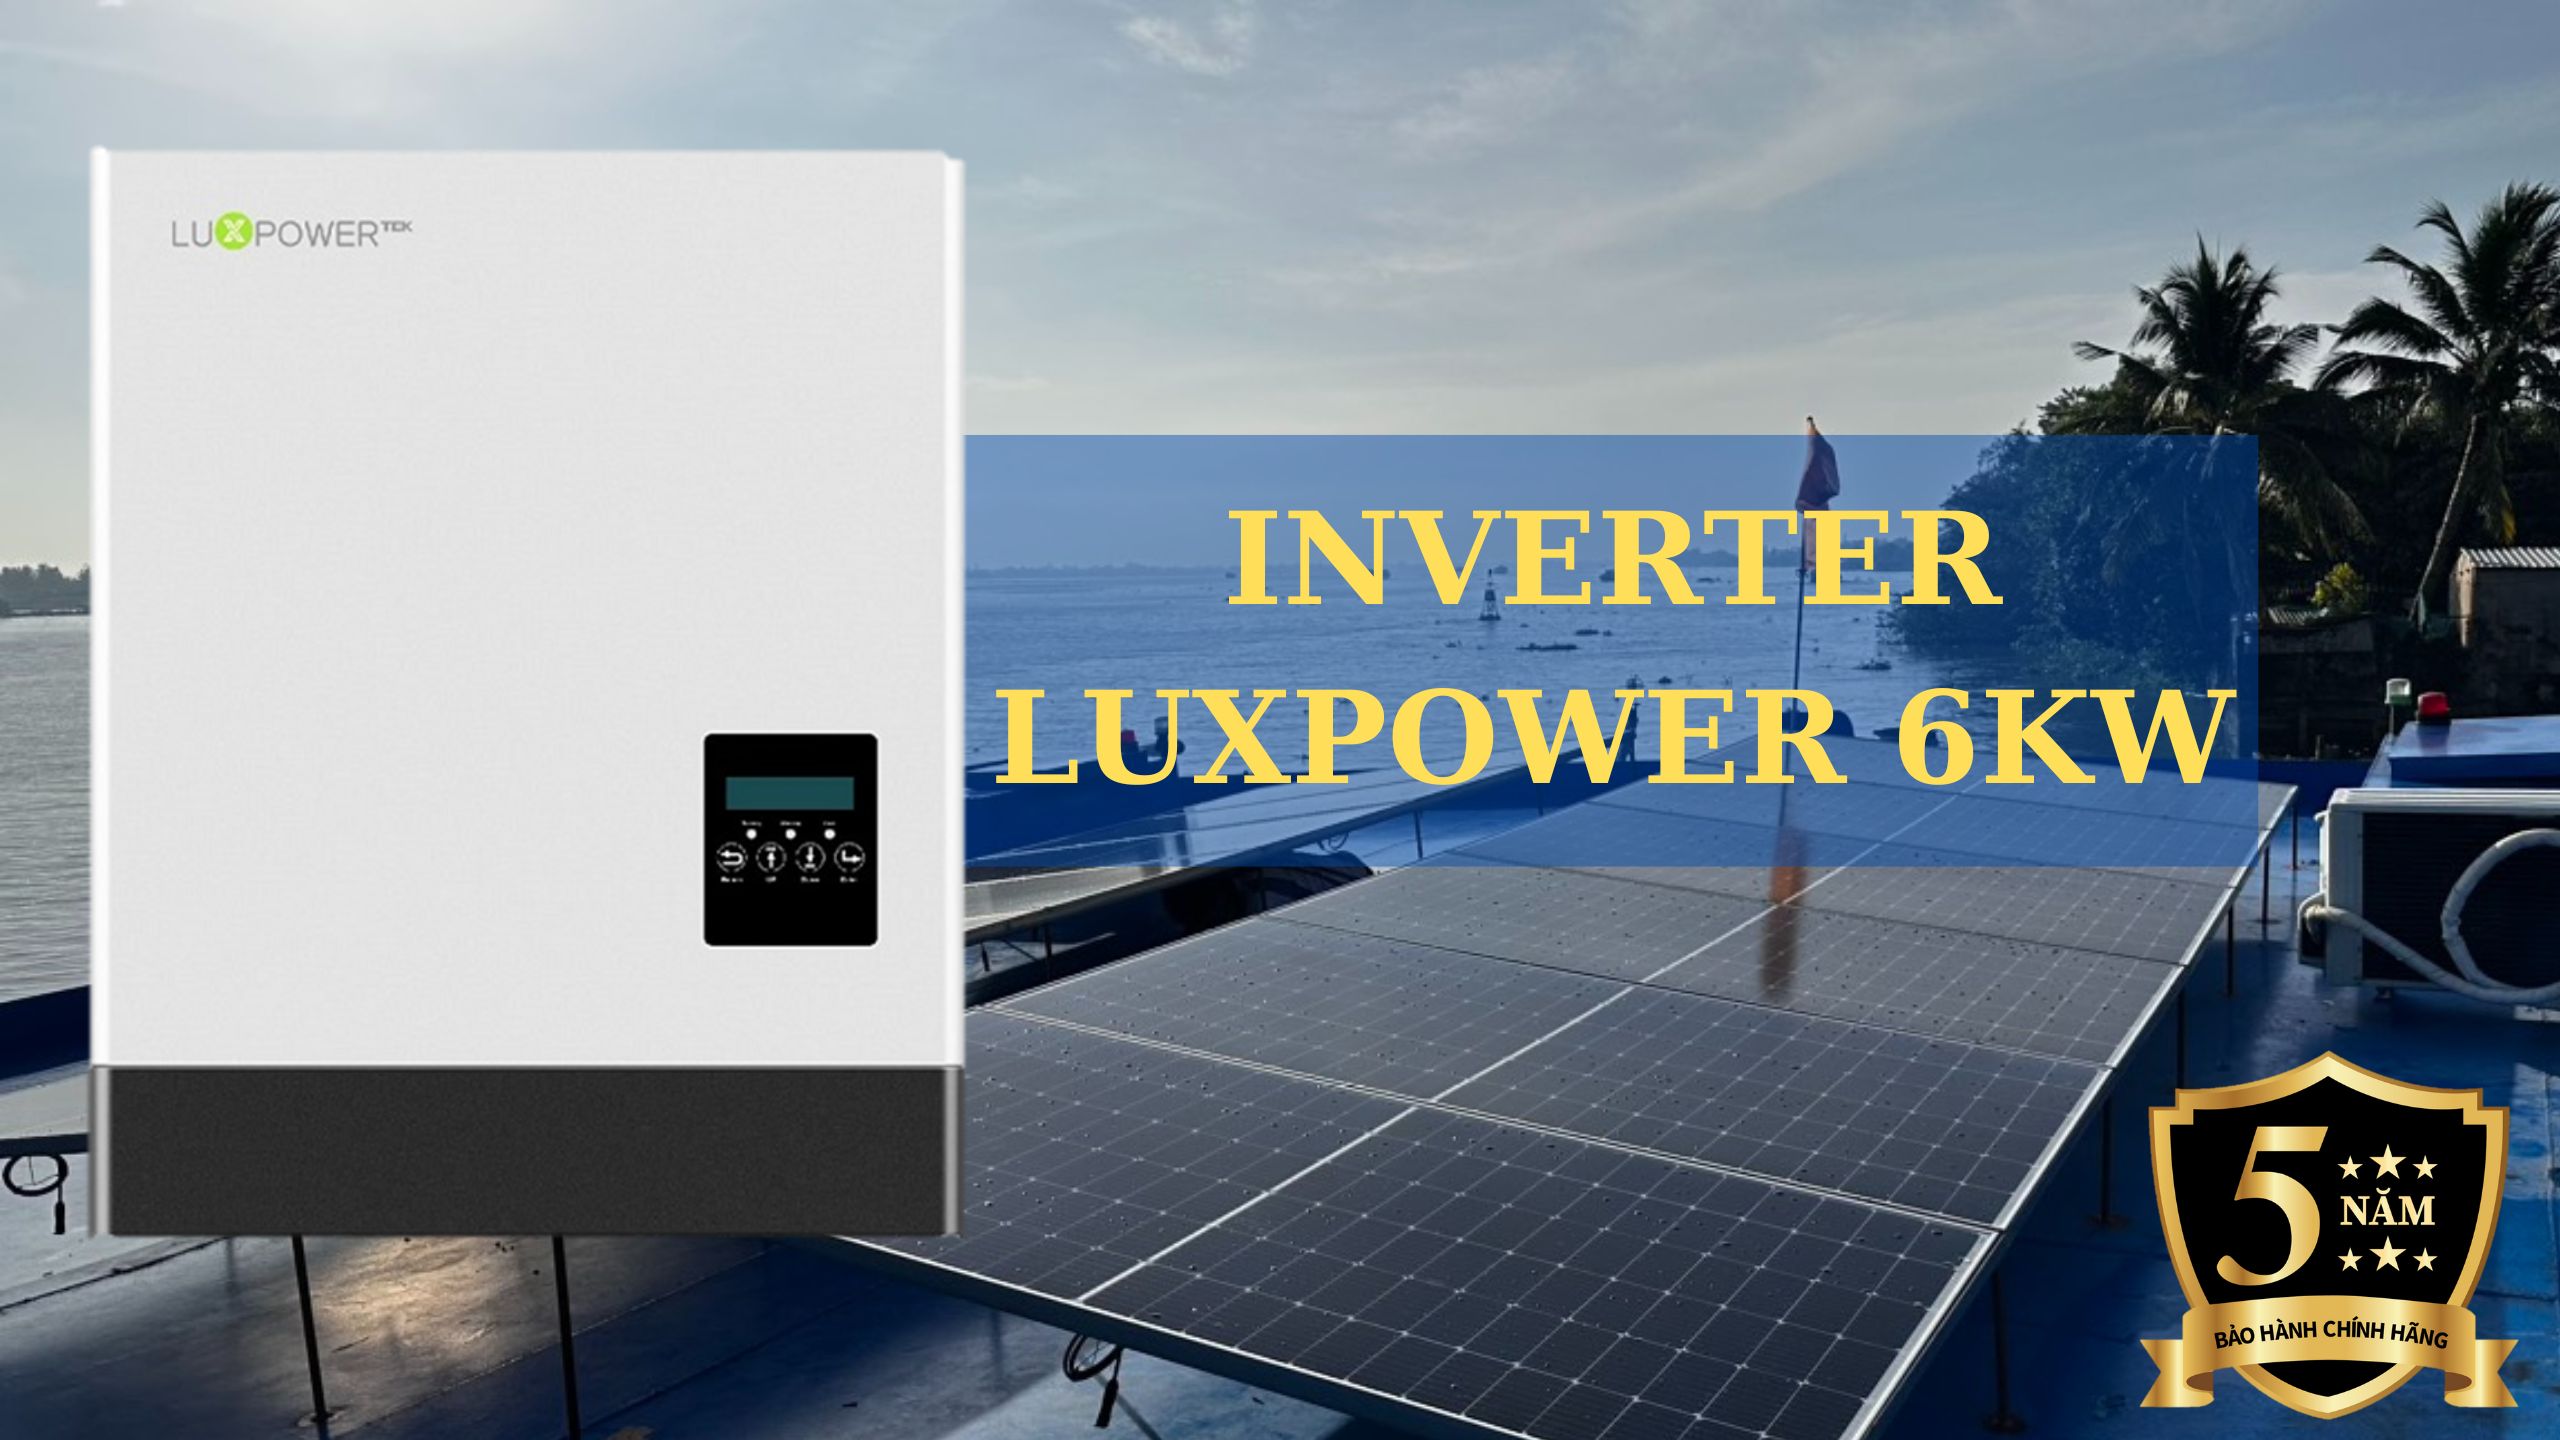 Inverter Luxpower 6kw